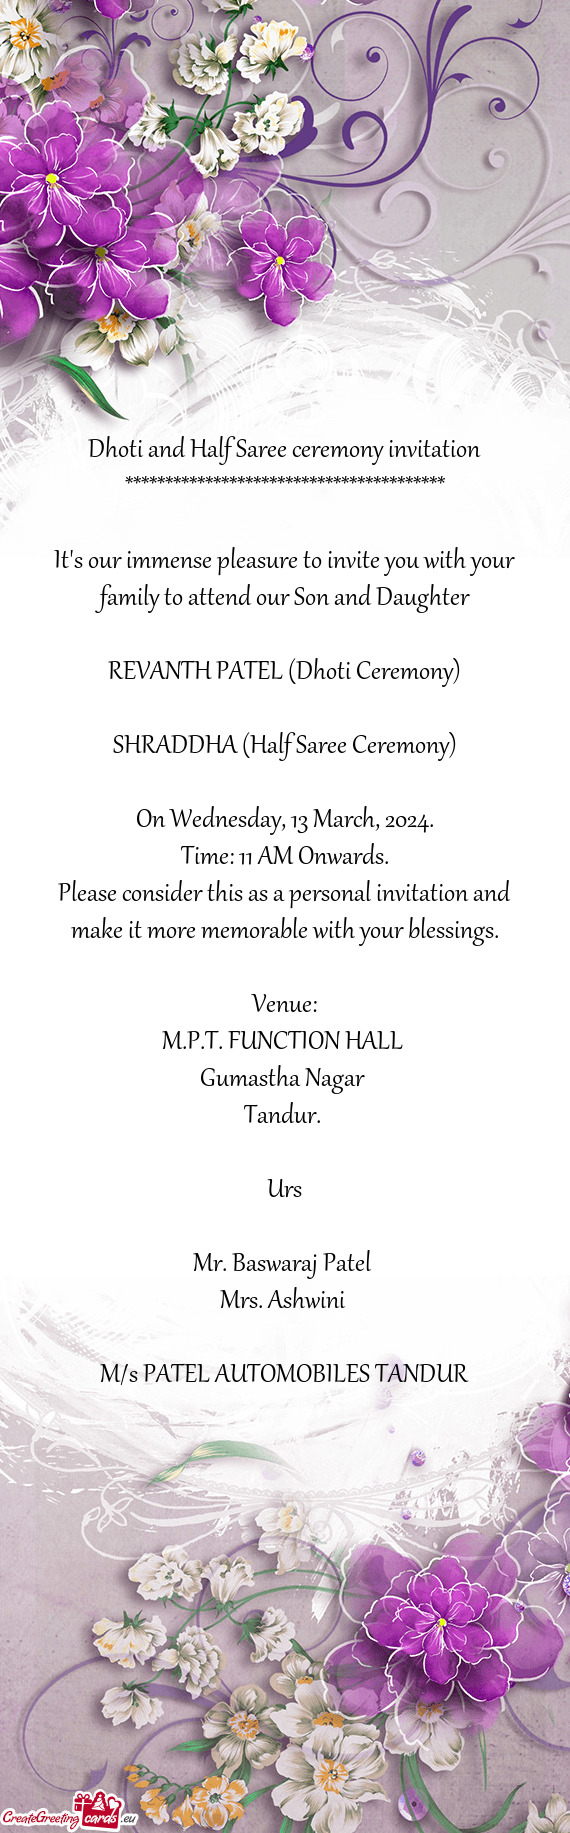 SHRADDHA (Half Saree Ceremony)